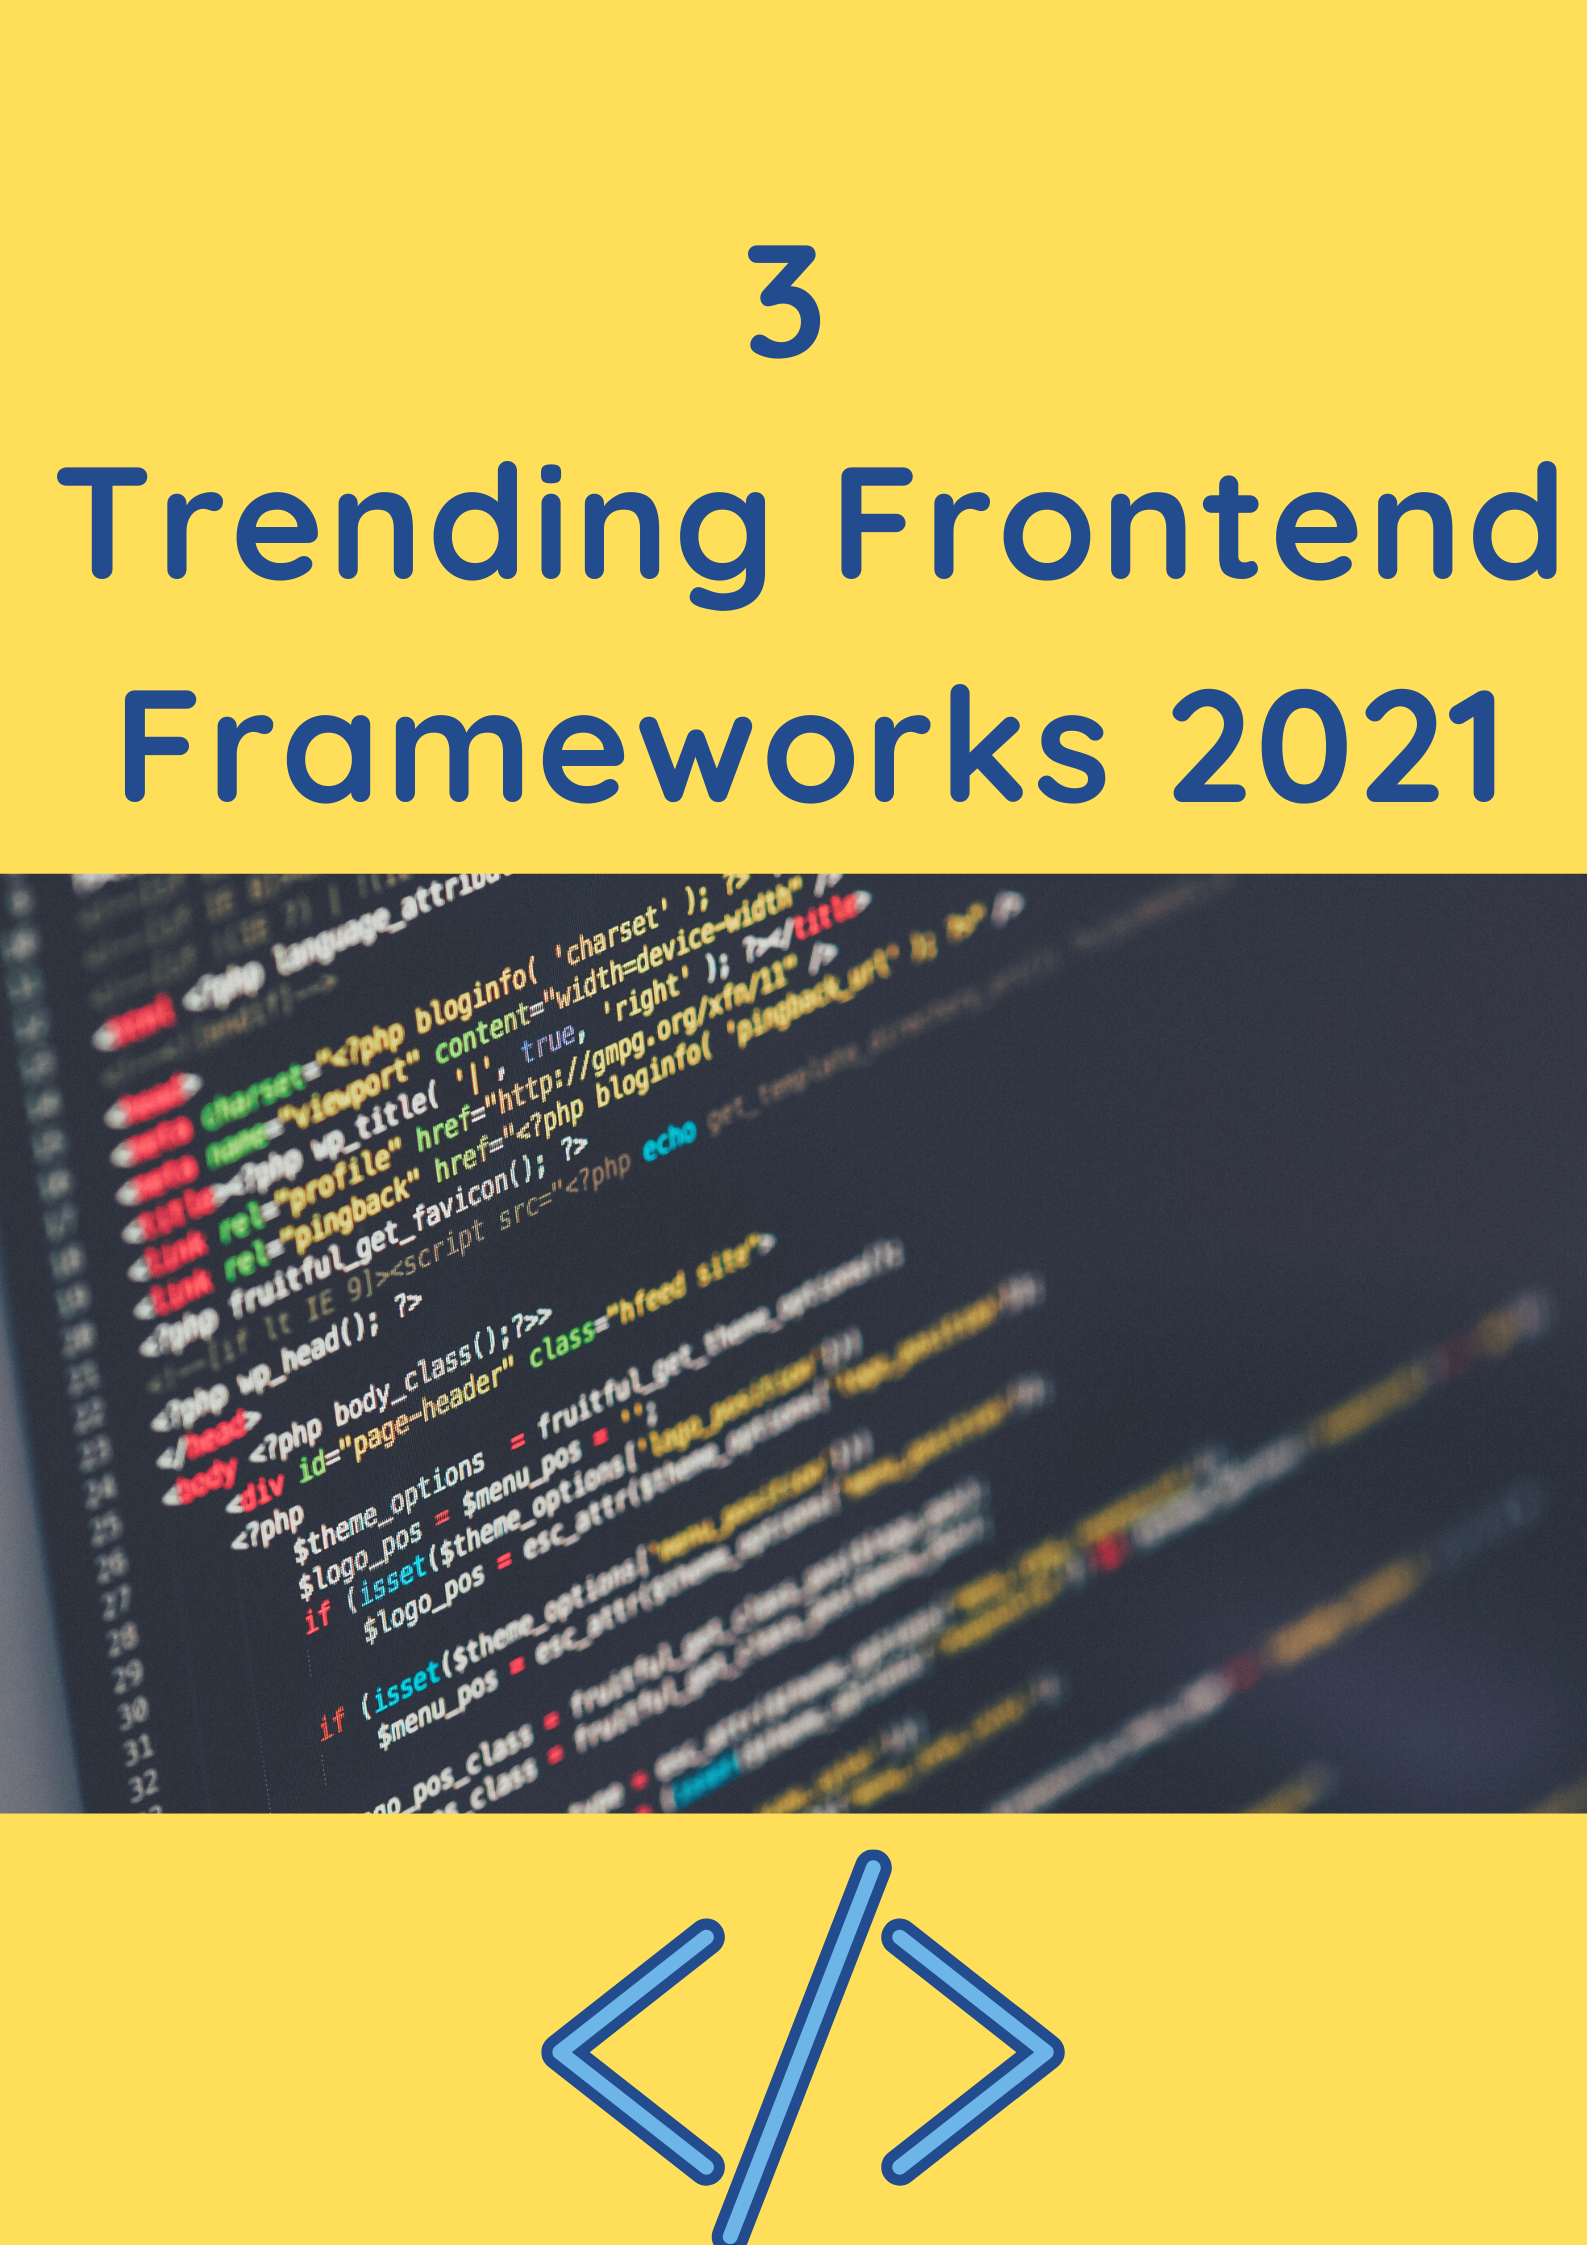 3 Trending Frontend Frameworks 2021